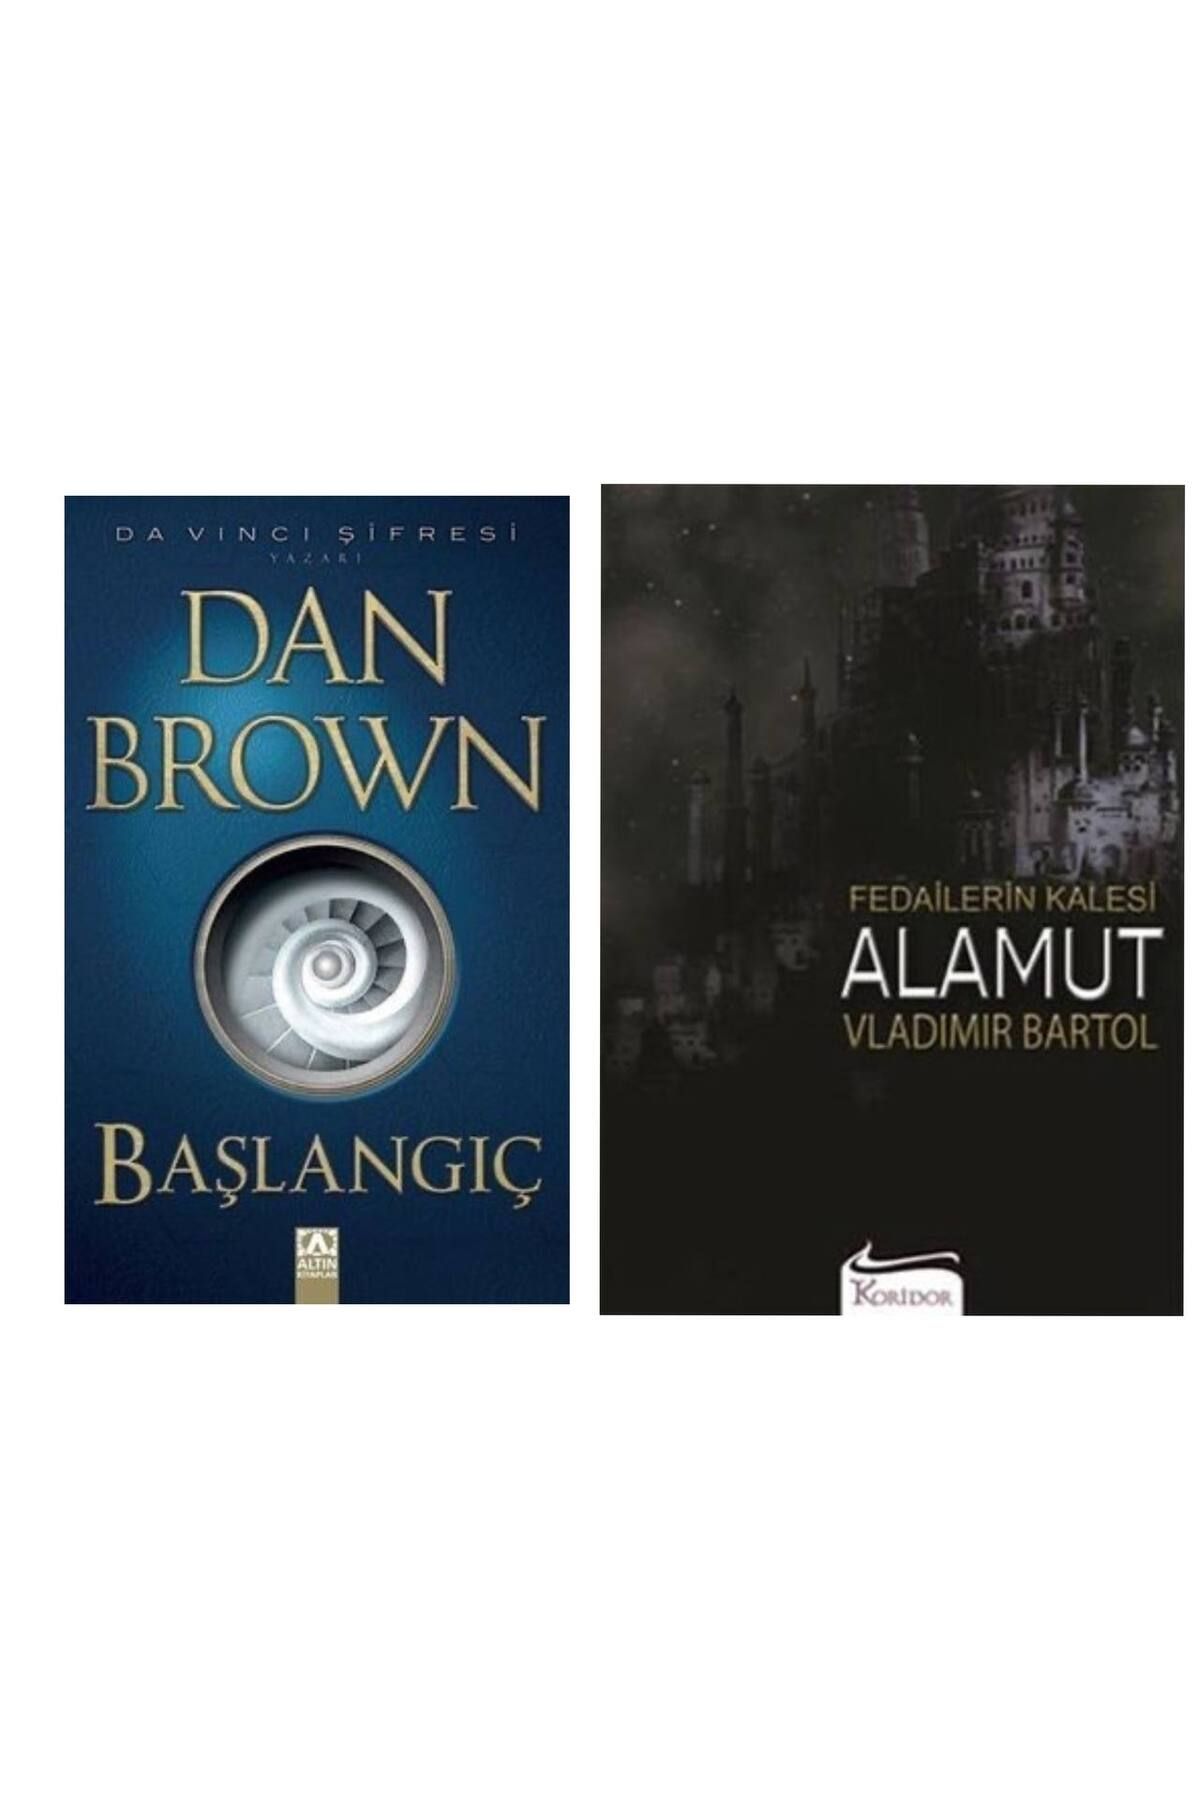 Altın Kitaplar Başlangıç Dan Brown - Fedailerin Kalesi Alamut Vladimir Bartol